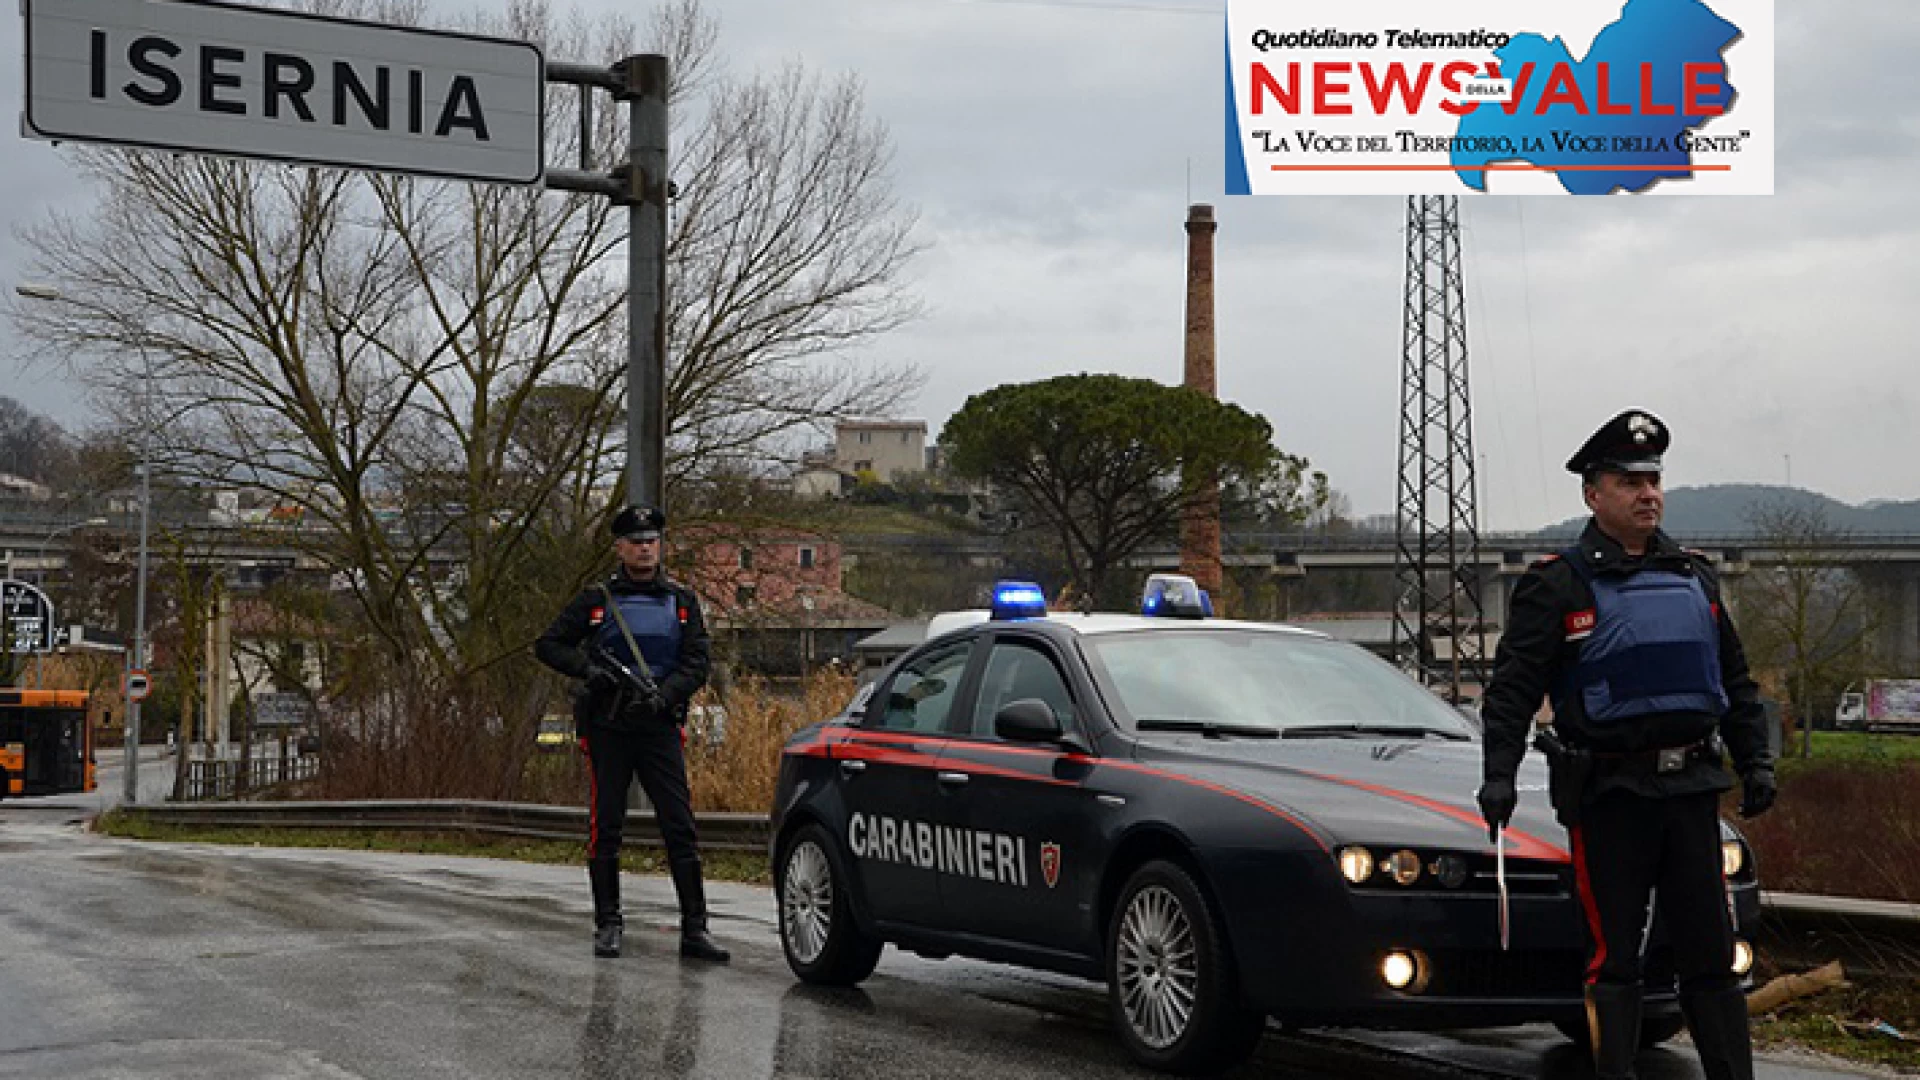 Venafro (IS): Spendita di banconote false: Carabinieri denunciano due persone di origine campana.